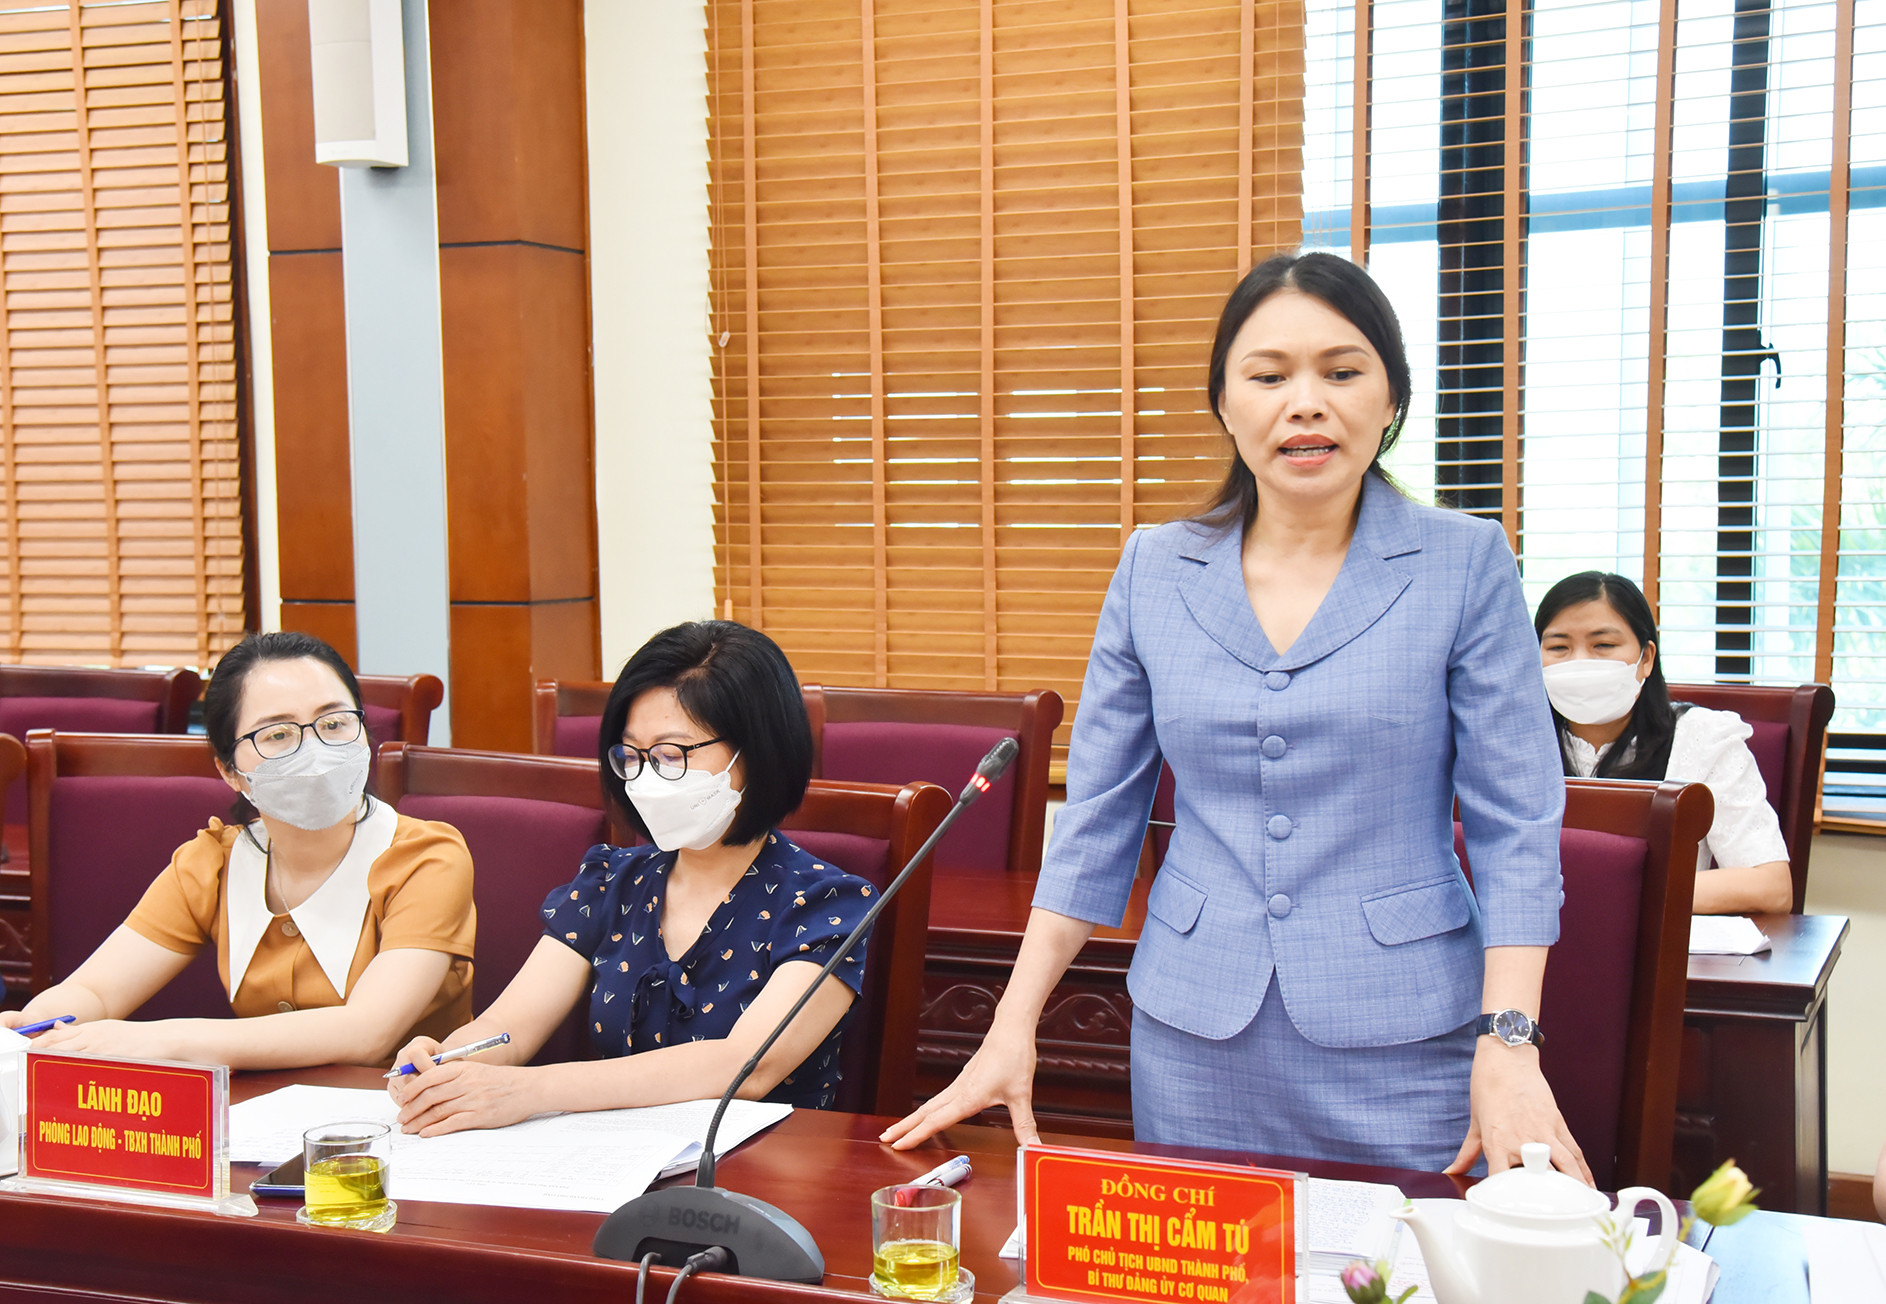 Đồng chí Trần Thị Cẩm Tú - Phó Chủ tịch UBND thành phố Vinh cho biết: Thành phố hướng tới đào tạo nguồn nhân lực có chất lượng cao đáp ứng nhu cầu sử dụng lao động